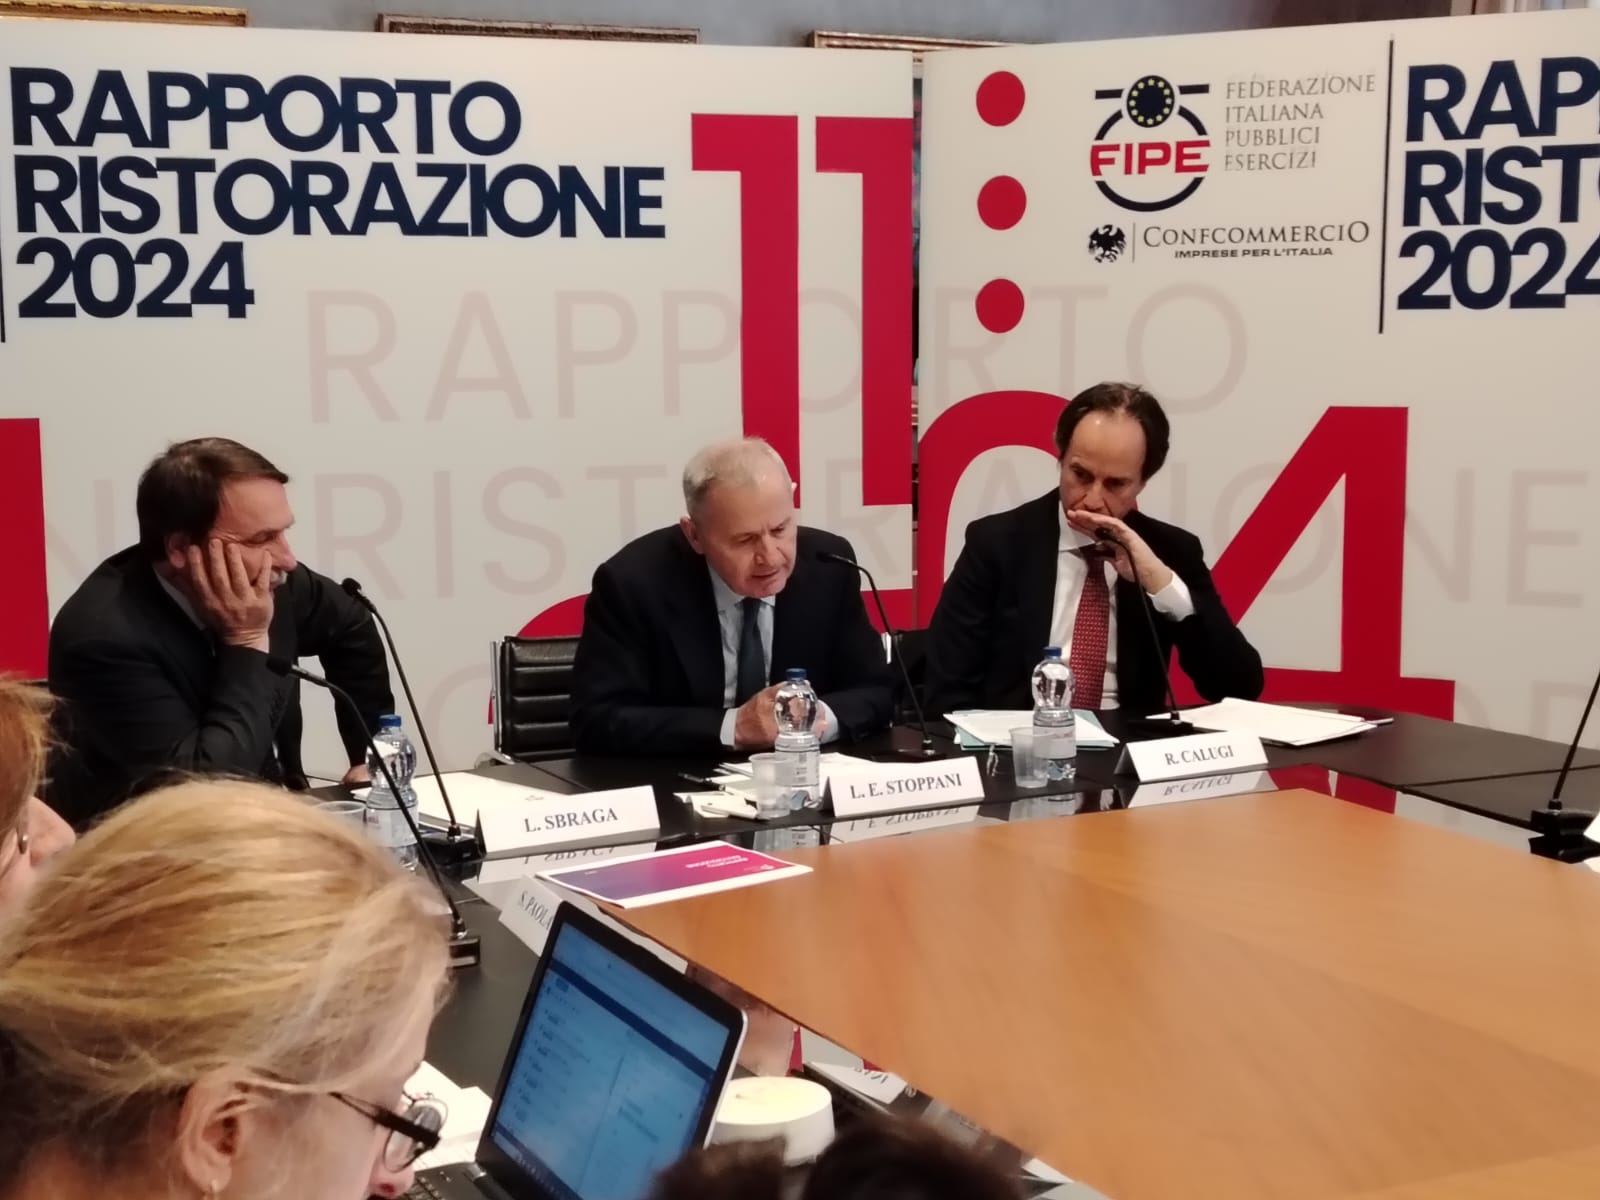 Da sinistra: il direttore del Centro Studi Fipe, Luciano Sbraga, il presidente della Fipe, Lino Enrico Stoppani e il direttore generale della Fipe, Roberto Calugi.